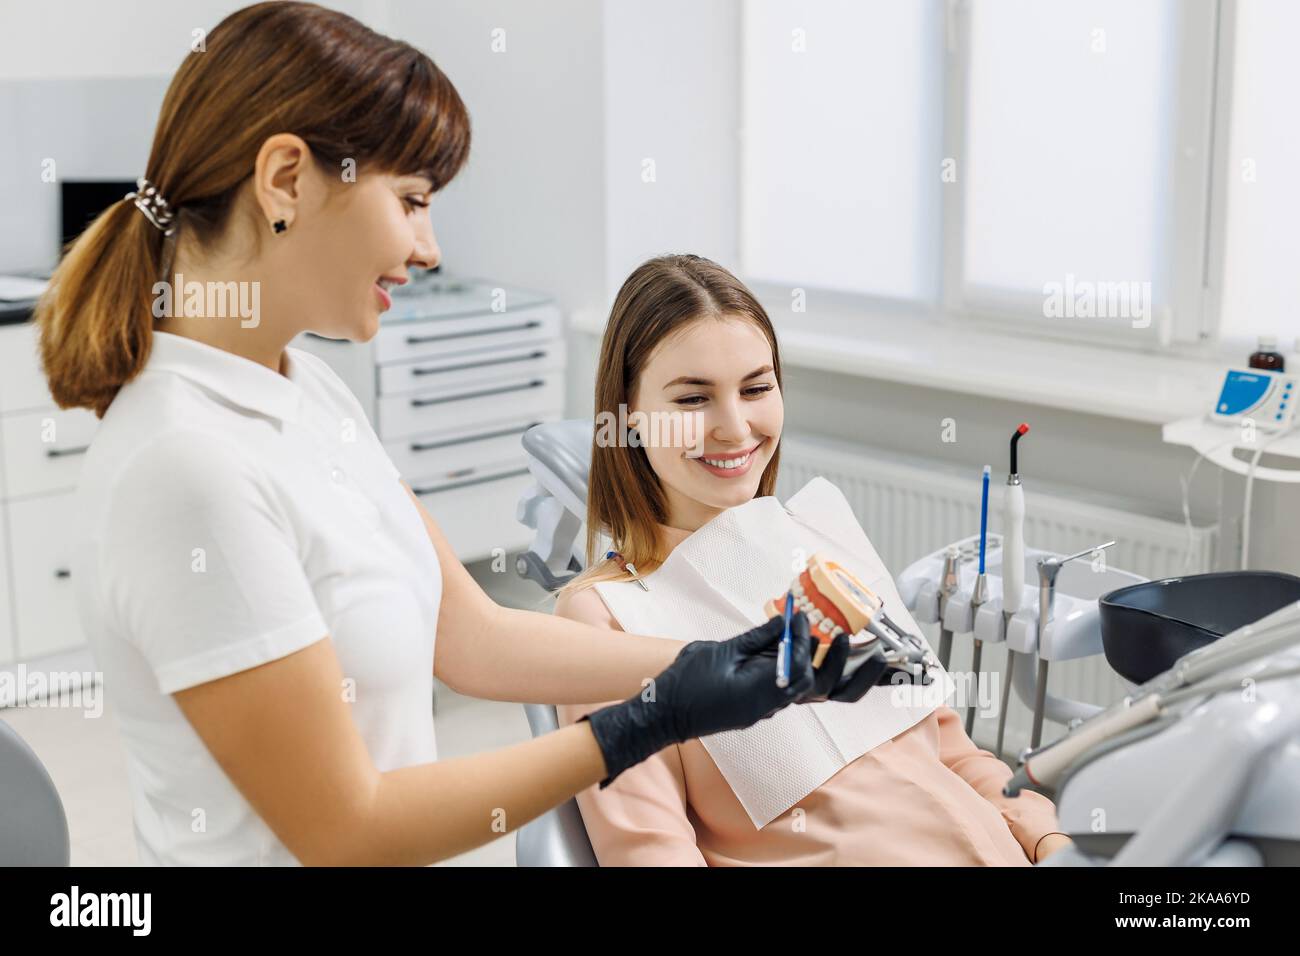 Un dentiste souriant démontrera une maquette de la mâchoire humaine et explique la prévention et le traitement des caries. Modèle de dents dans les mains du médecin. Photo de concept Banque D'Images